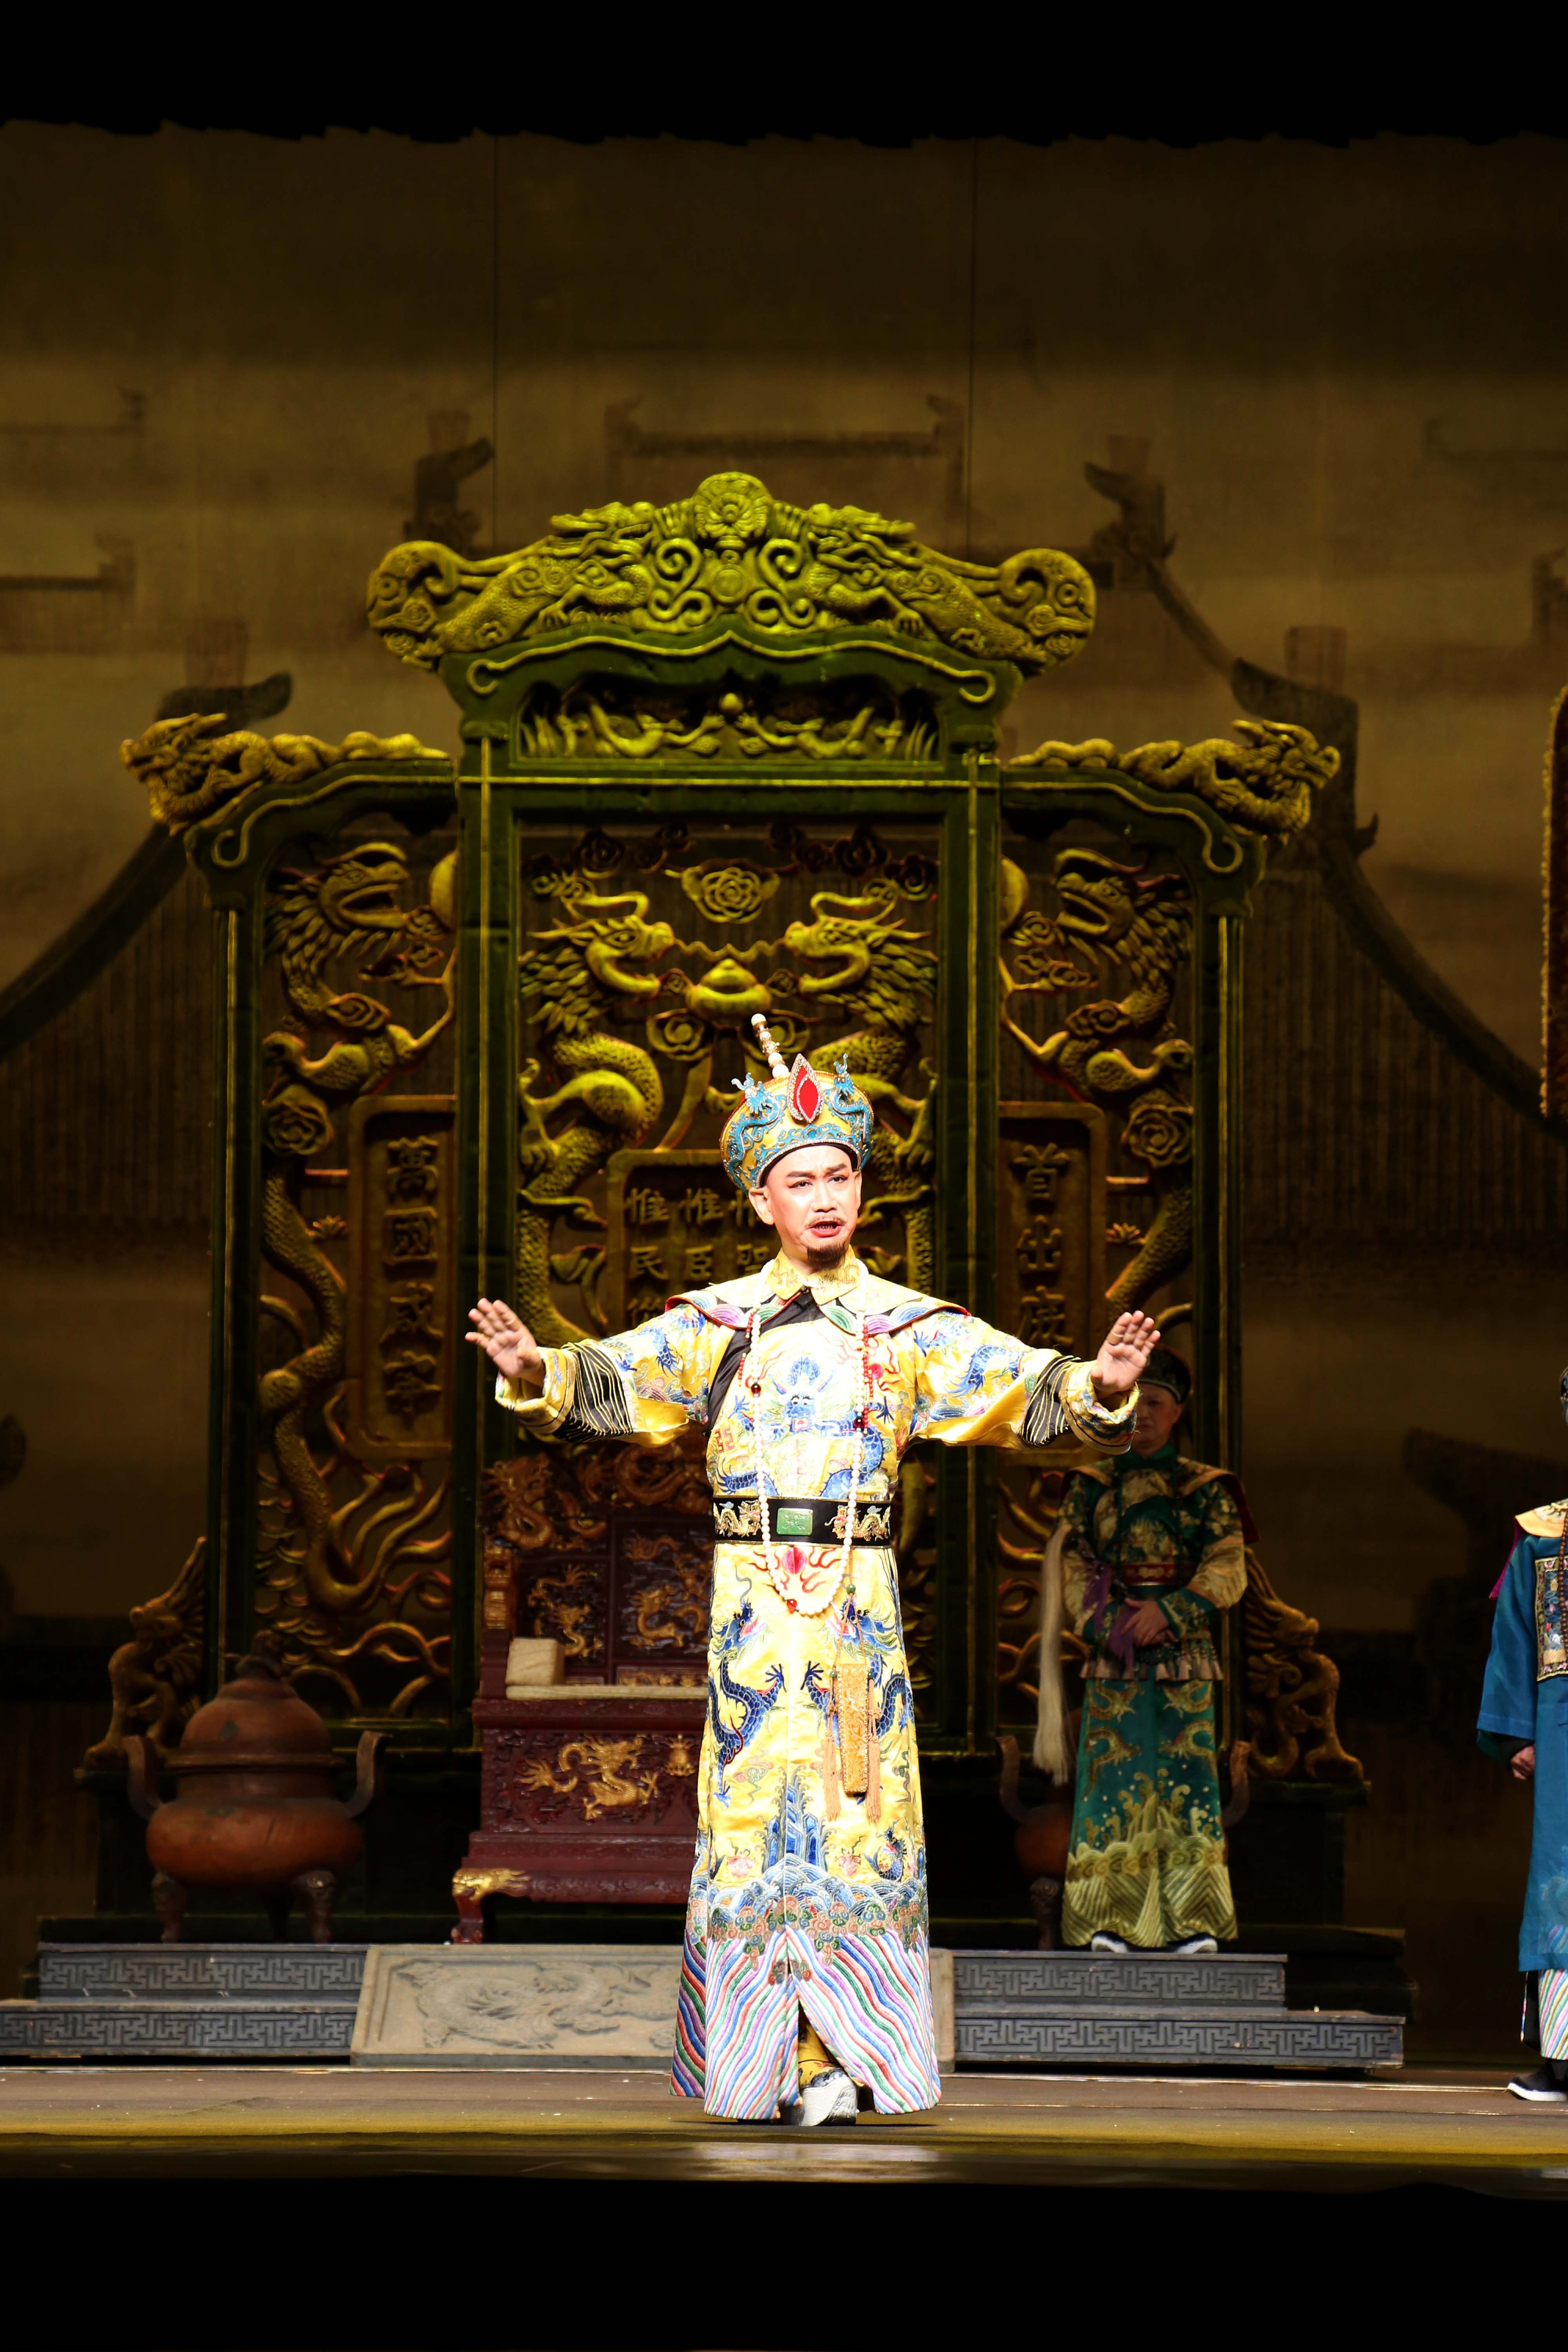 国粹经典 黄梅戏《红楼梦》——安徽黄梅戏剧院浓情演绎